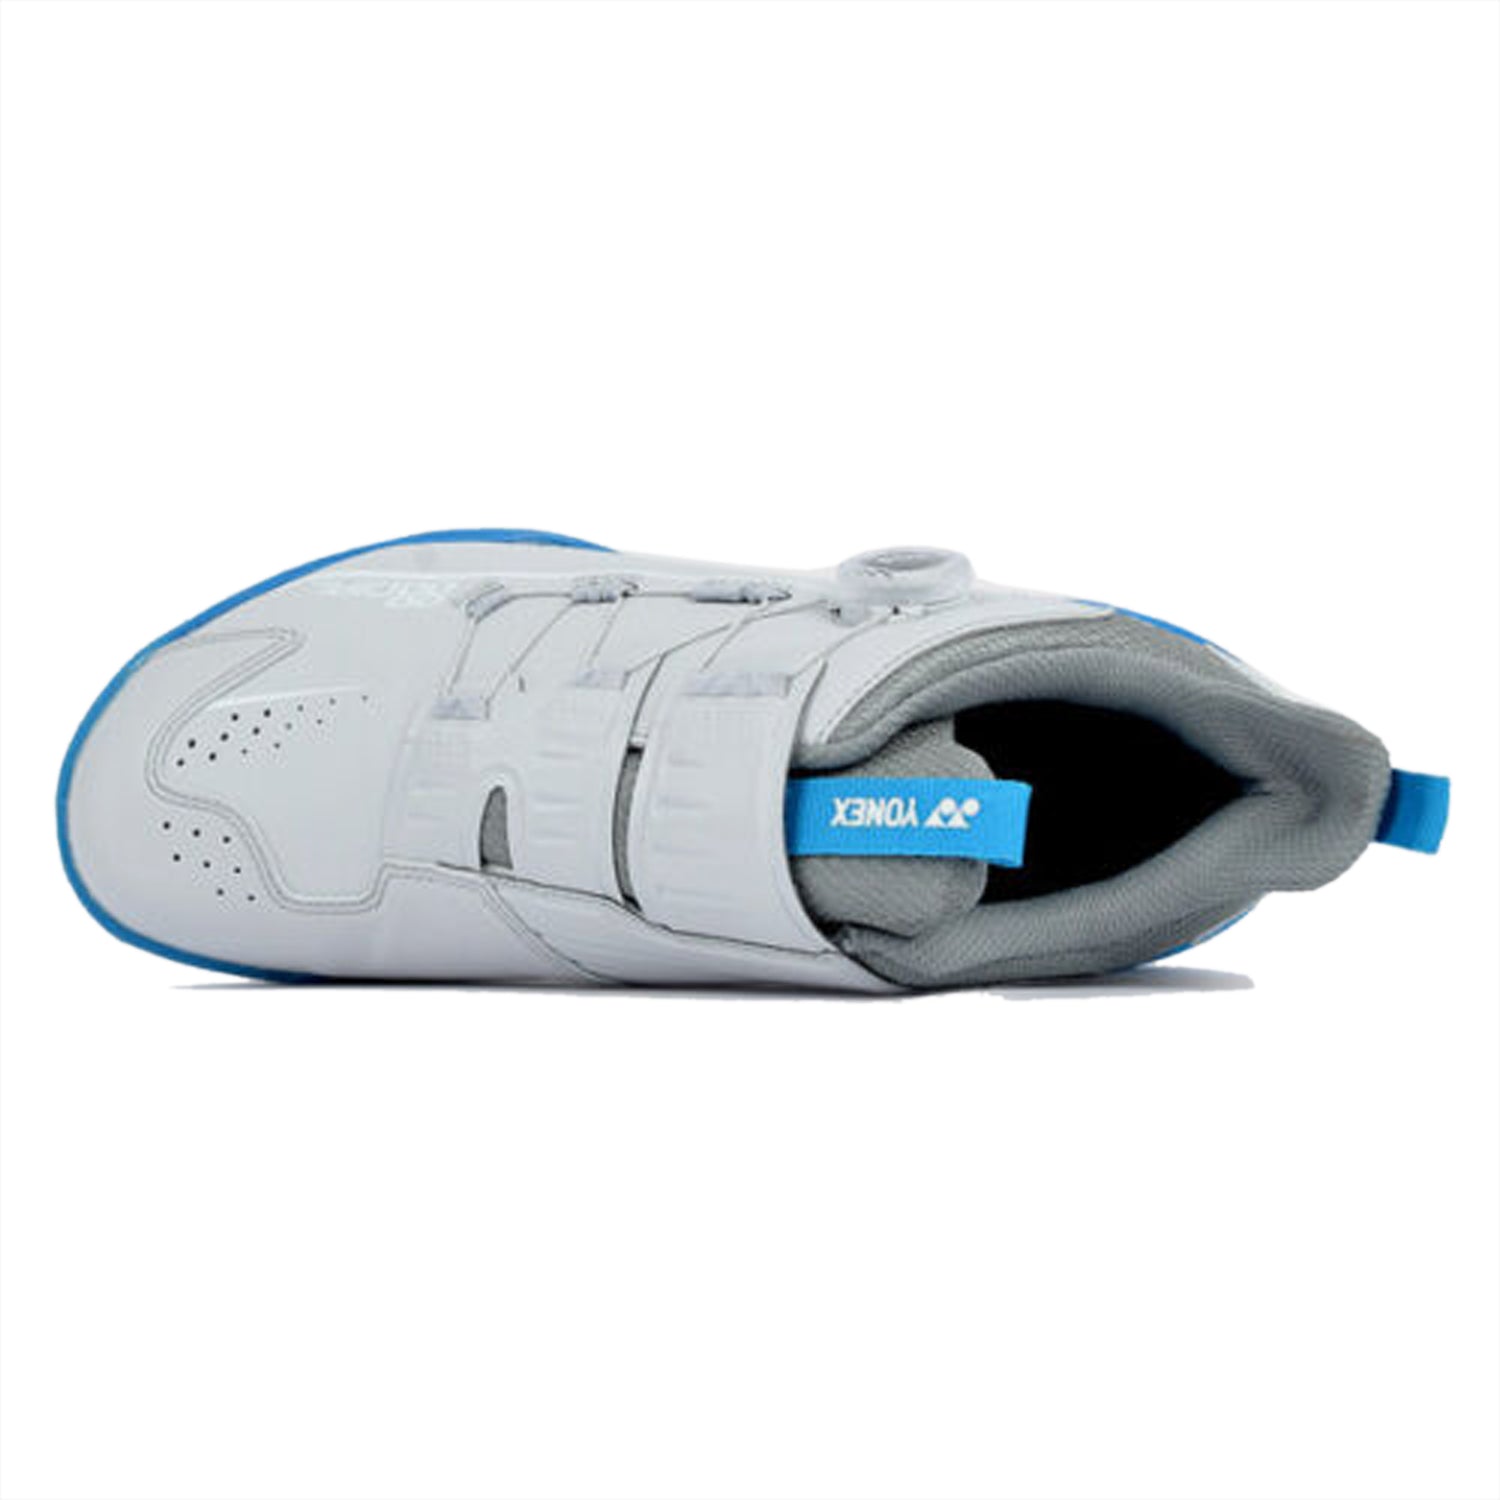 Yonex Power Cushion 88 Dial Badminton Shoes - Best Price online Prokicksports.com